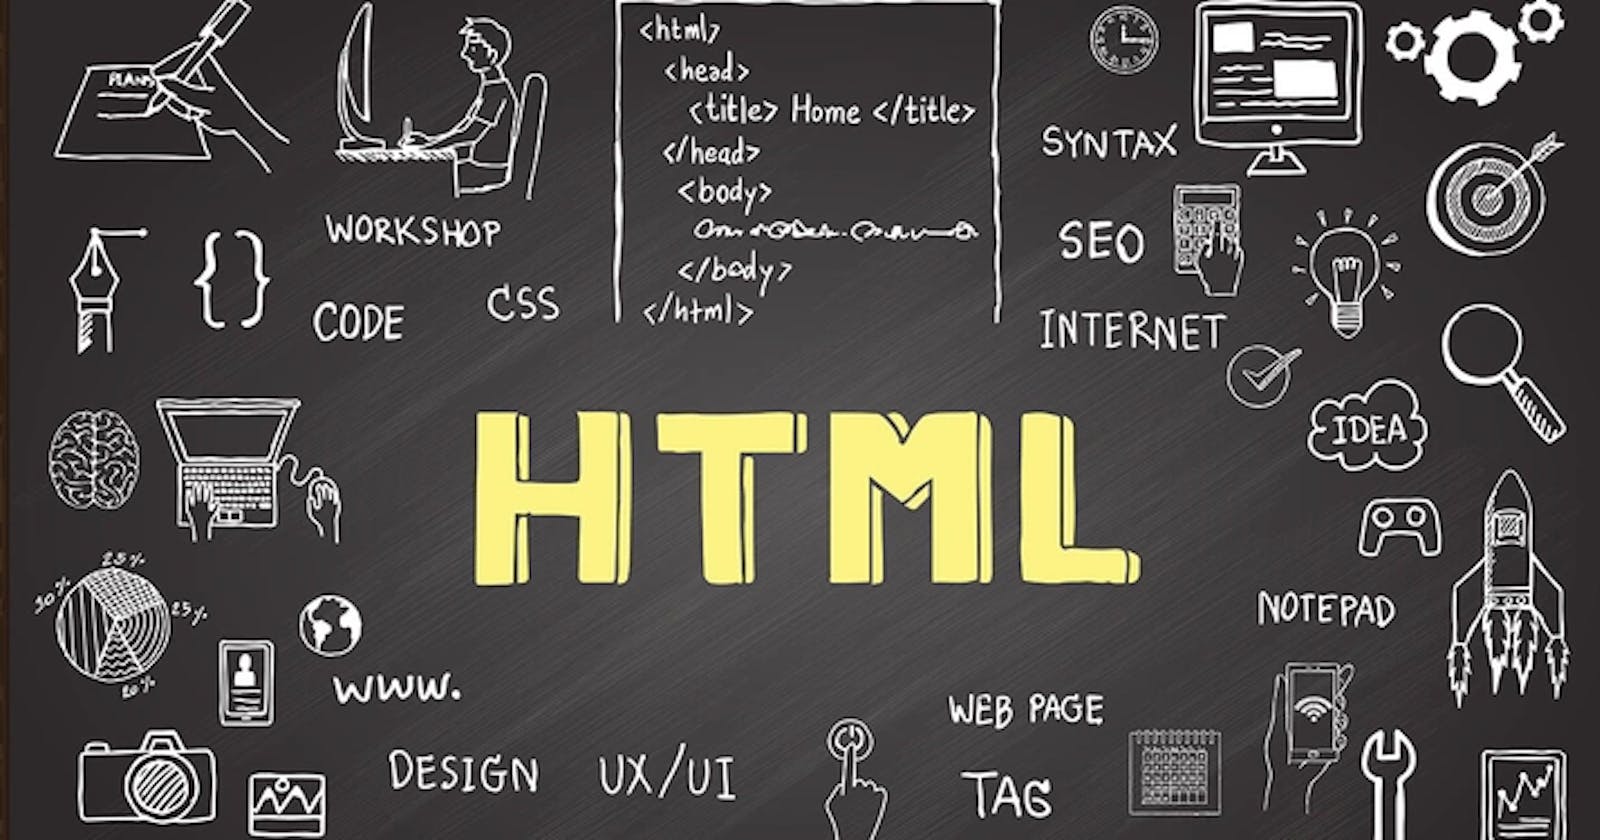 Basics of HTML